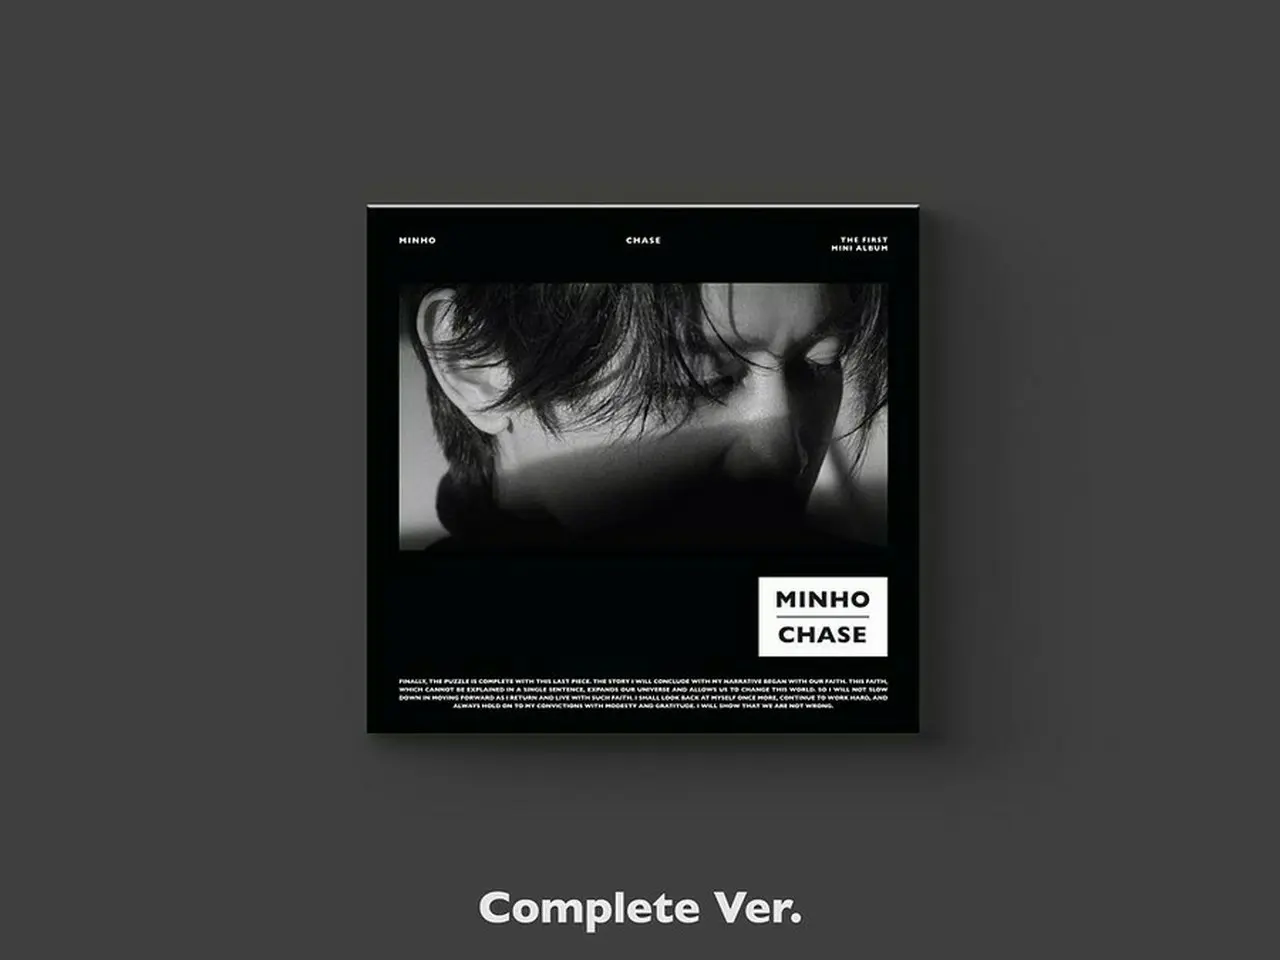 SHINee」ミンホ、1stソロアルバム「CHASE」のCD仕様を公開…“Complete 